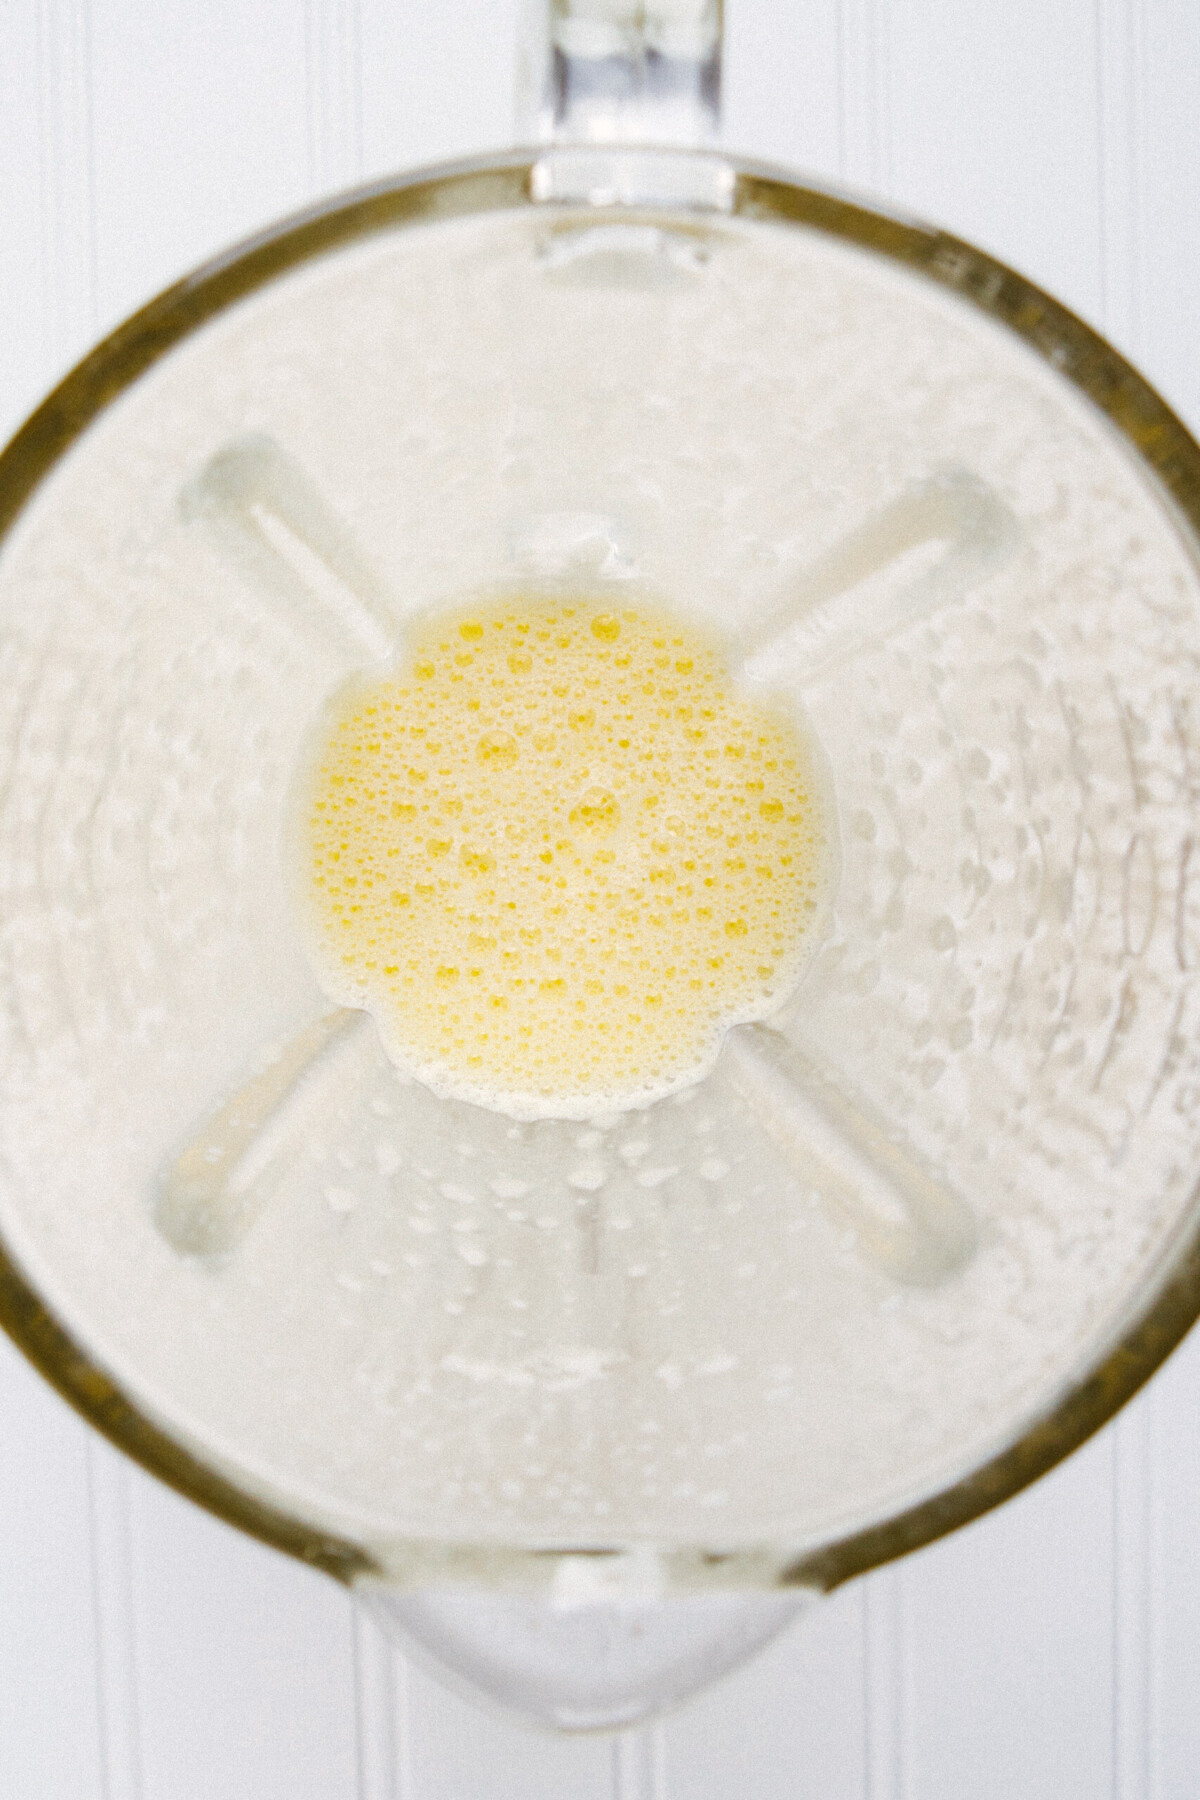 Photo of blended eggs in a blender